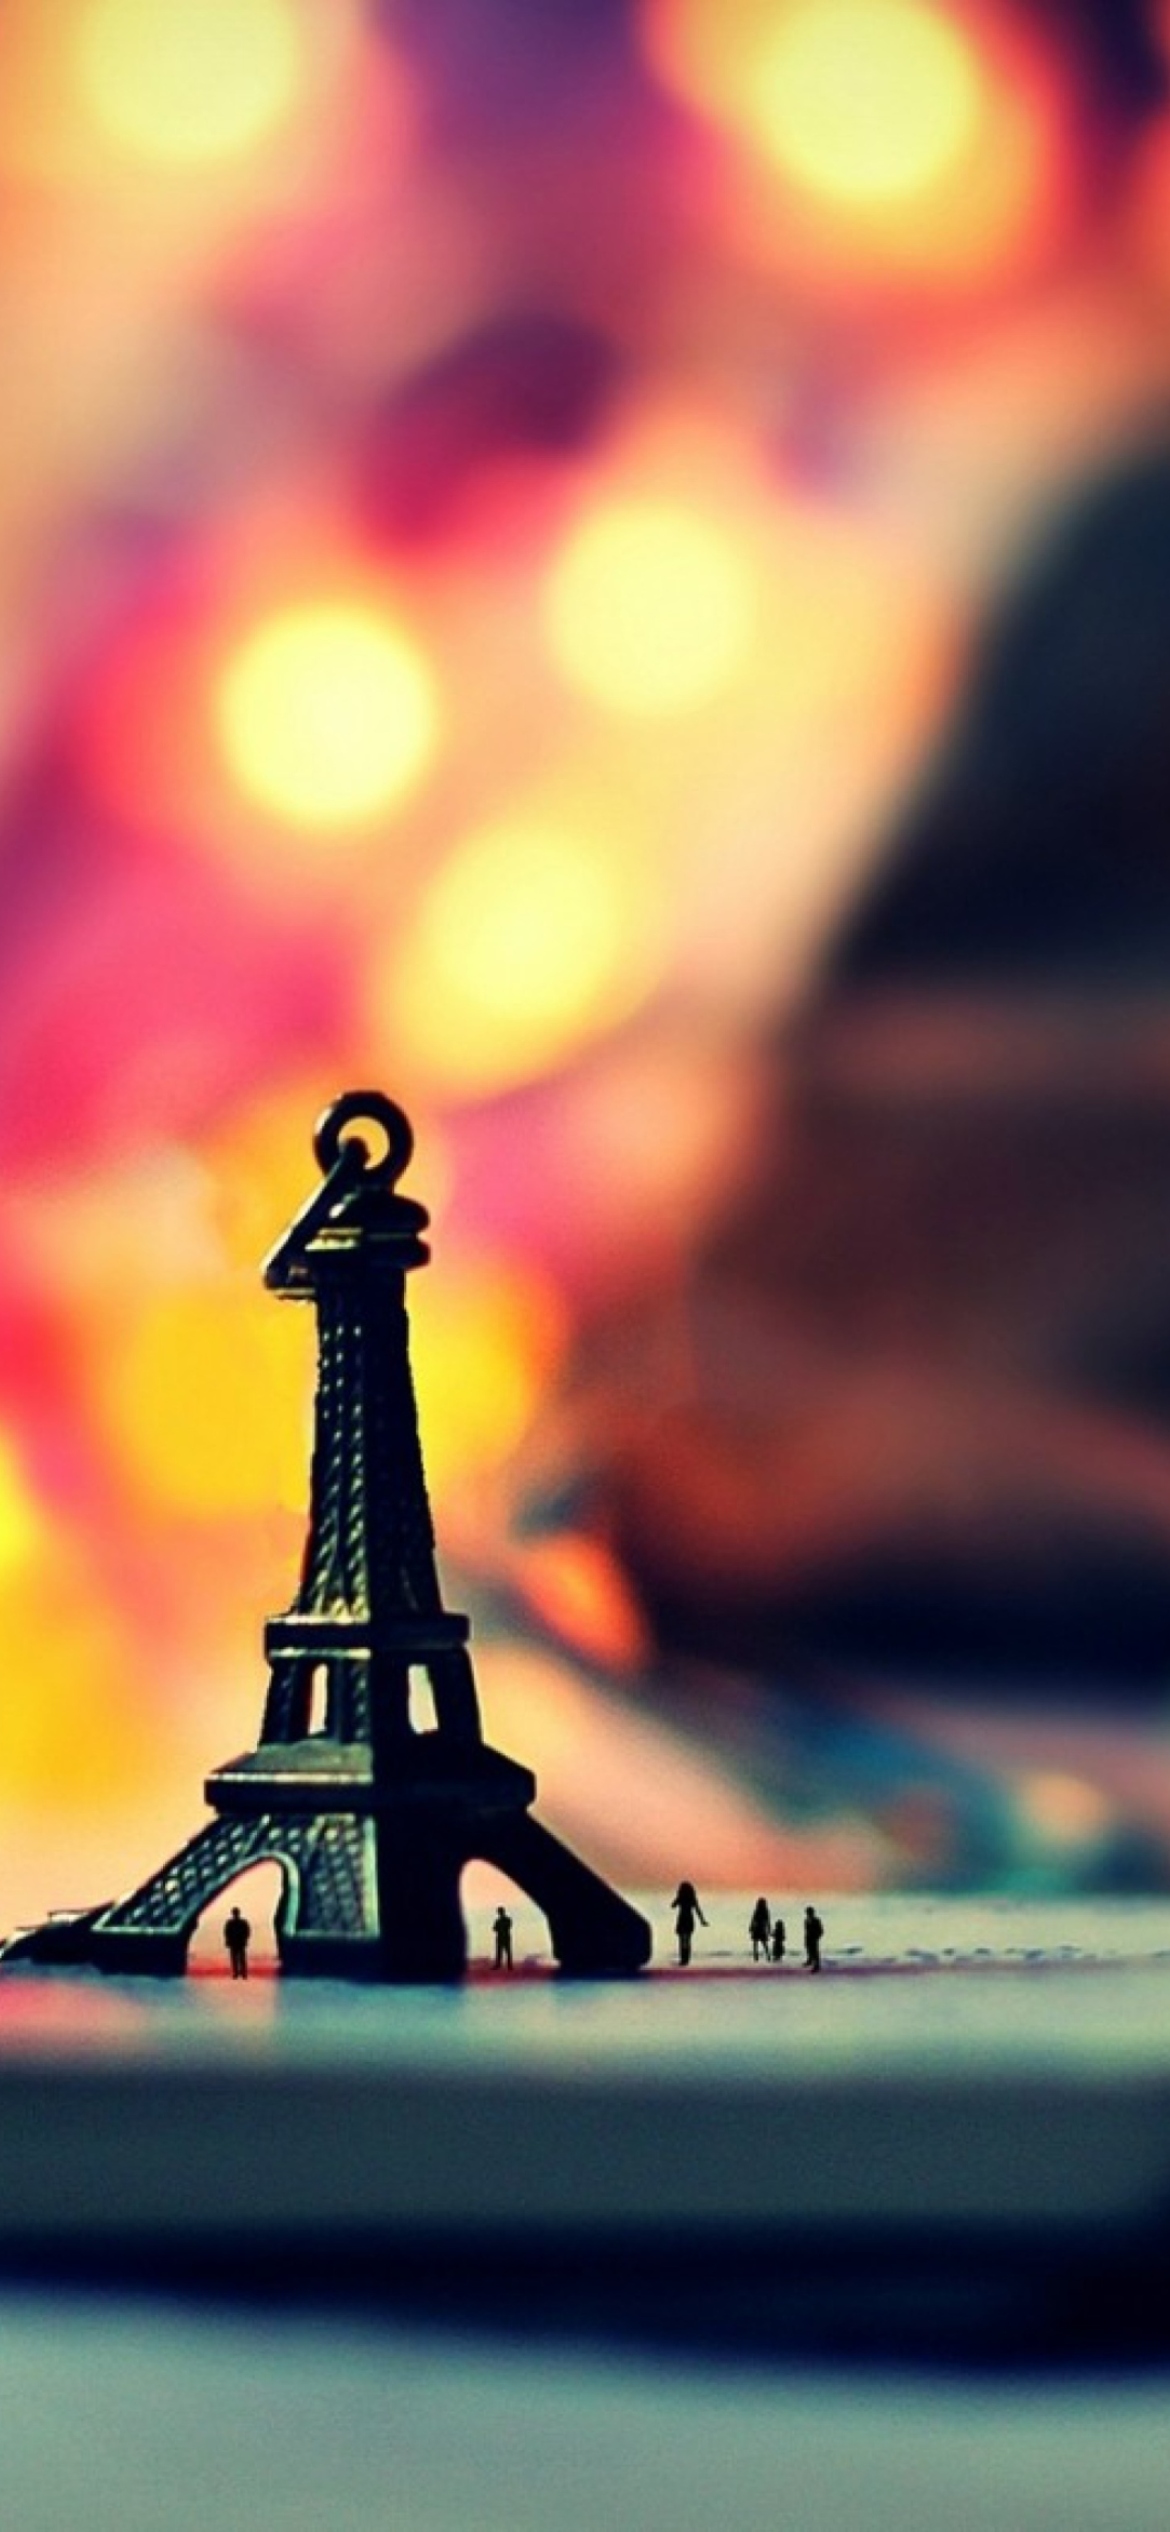 Little Eiffel Tower And Bokeh Lights screenshot #1 1170x2532